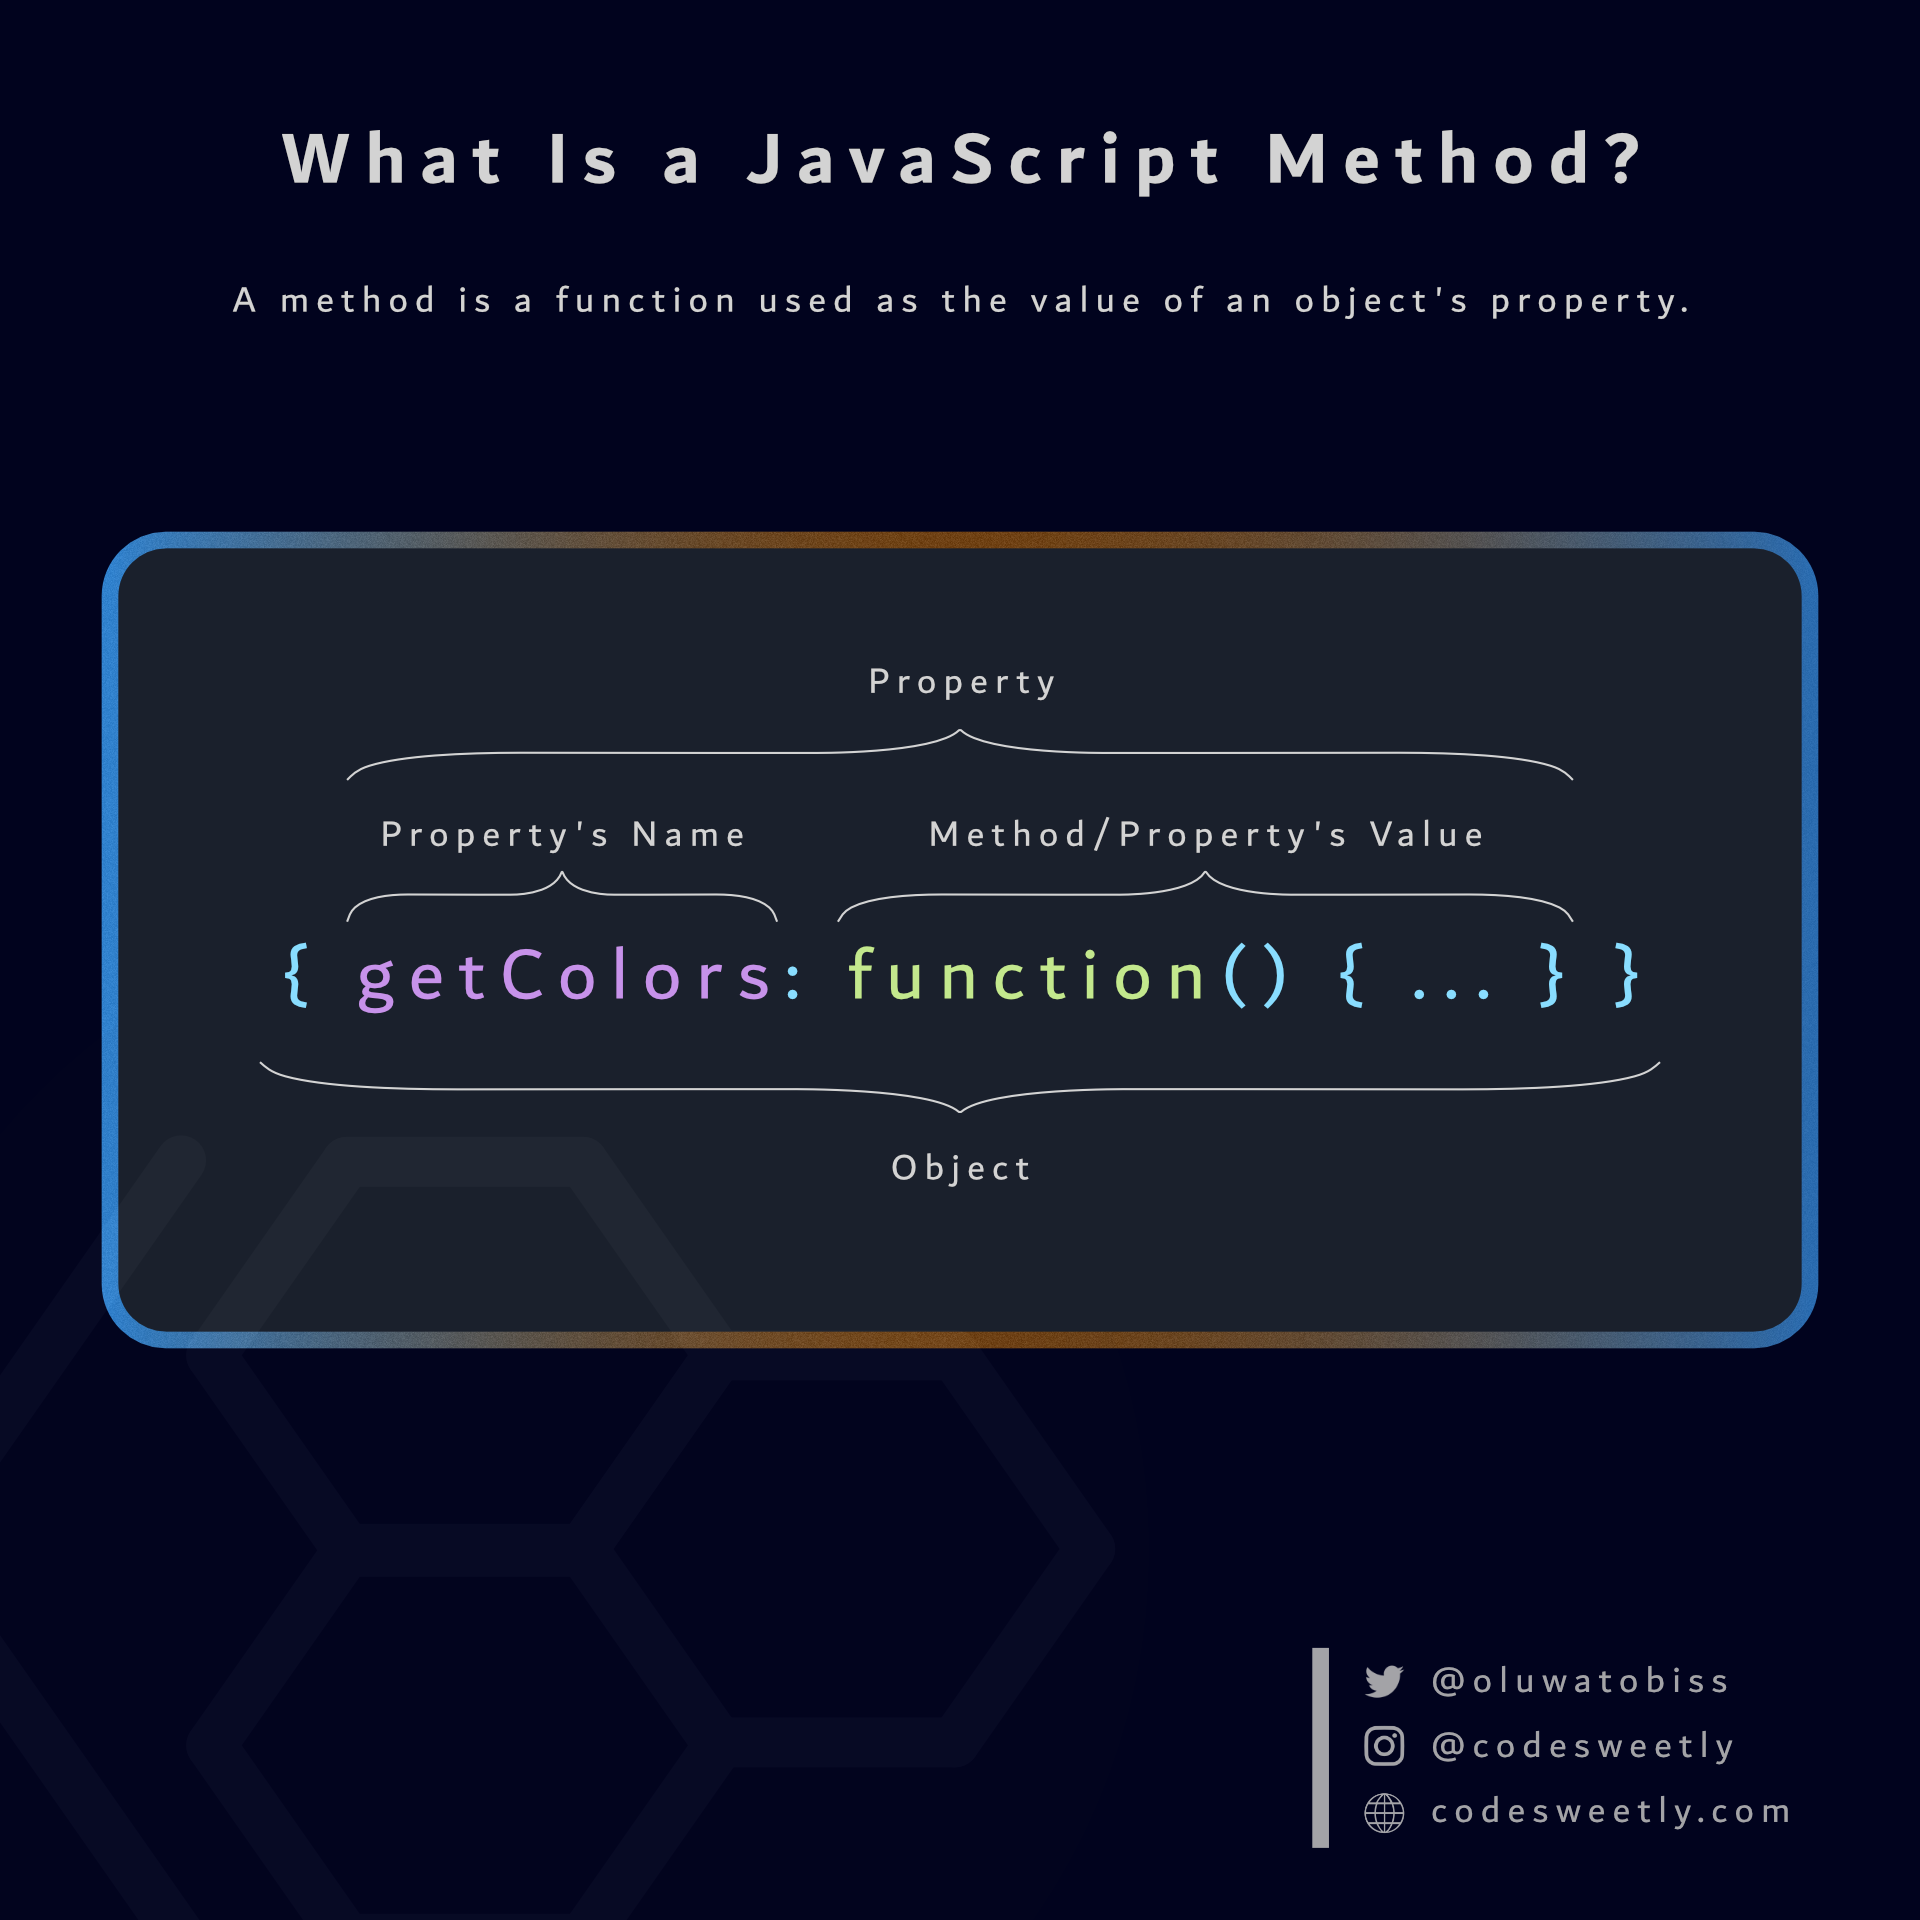 Illustration of a JavaScript method